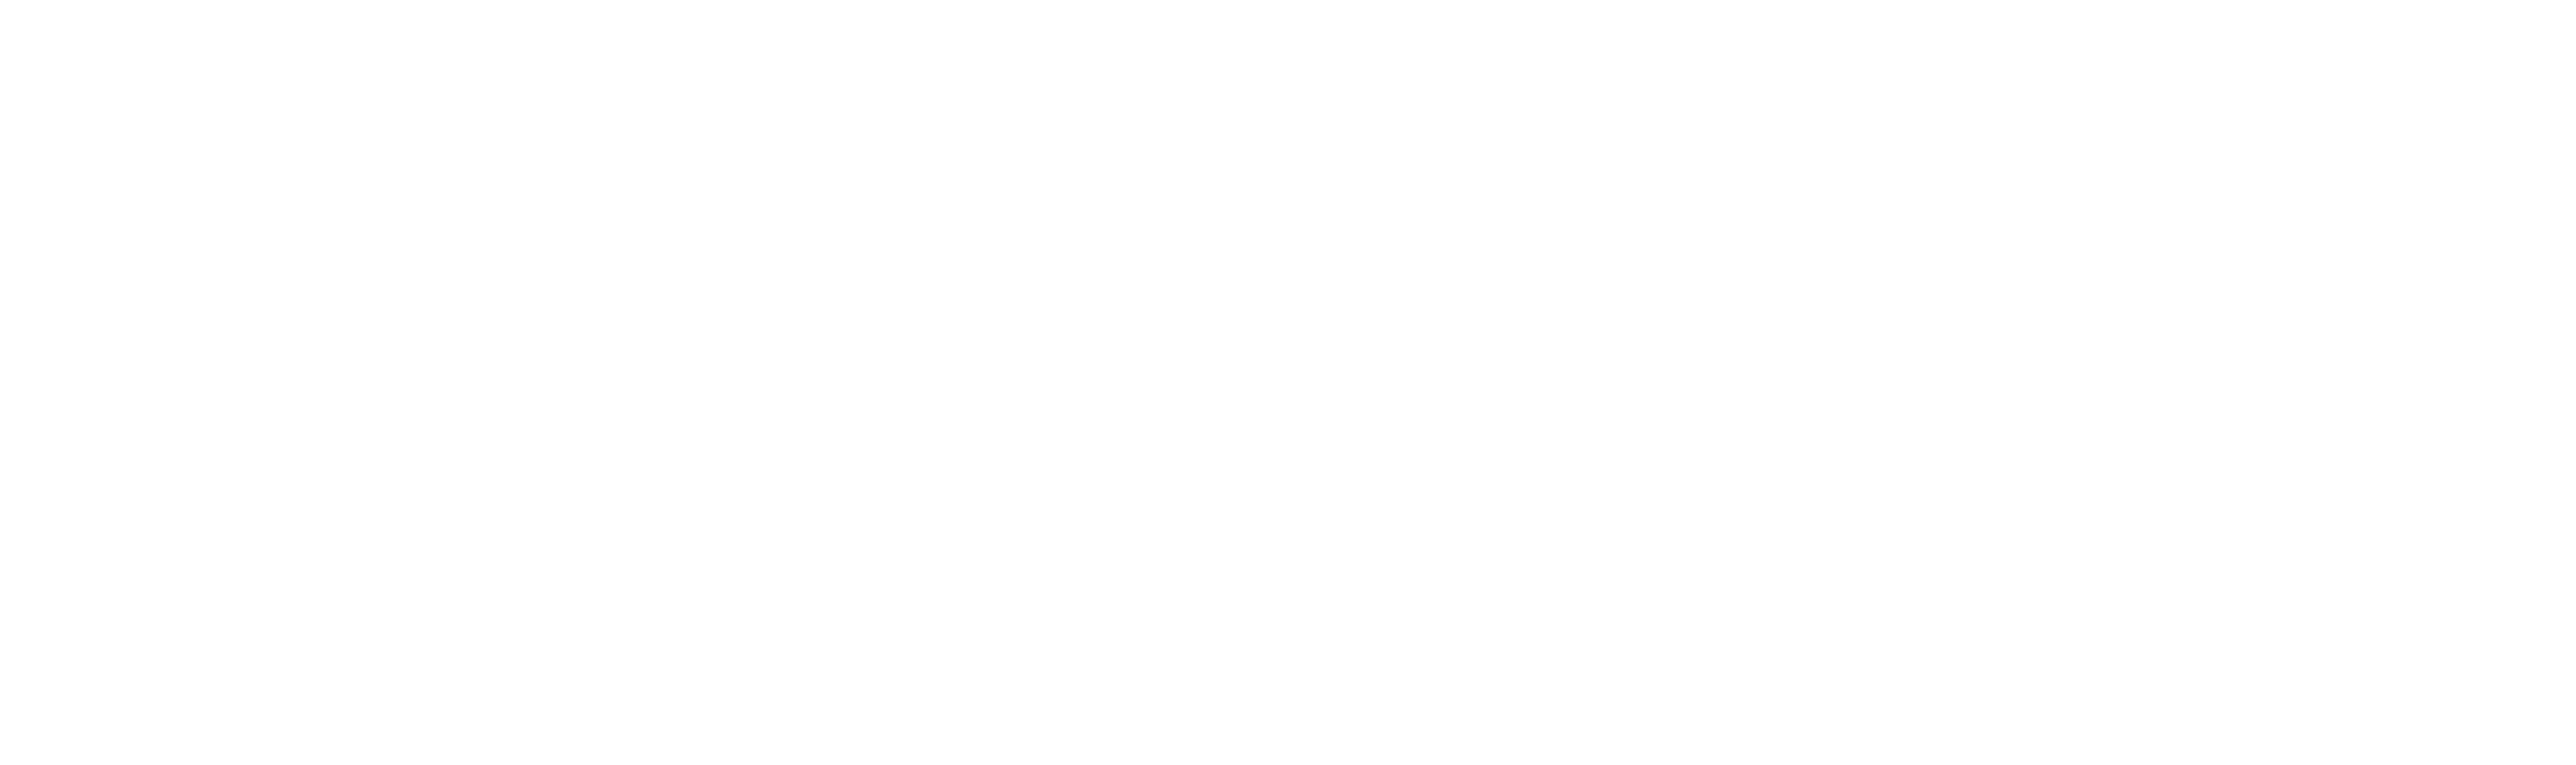 Meded manager logo white